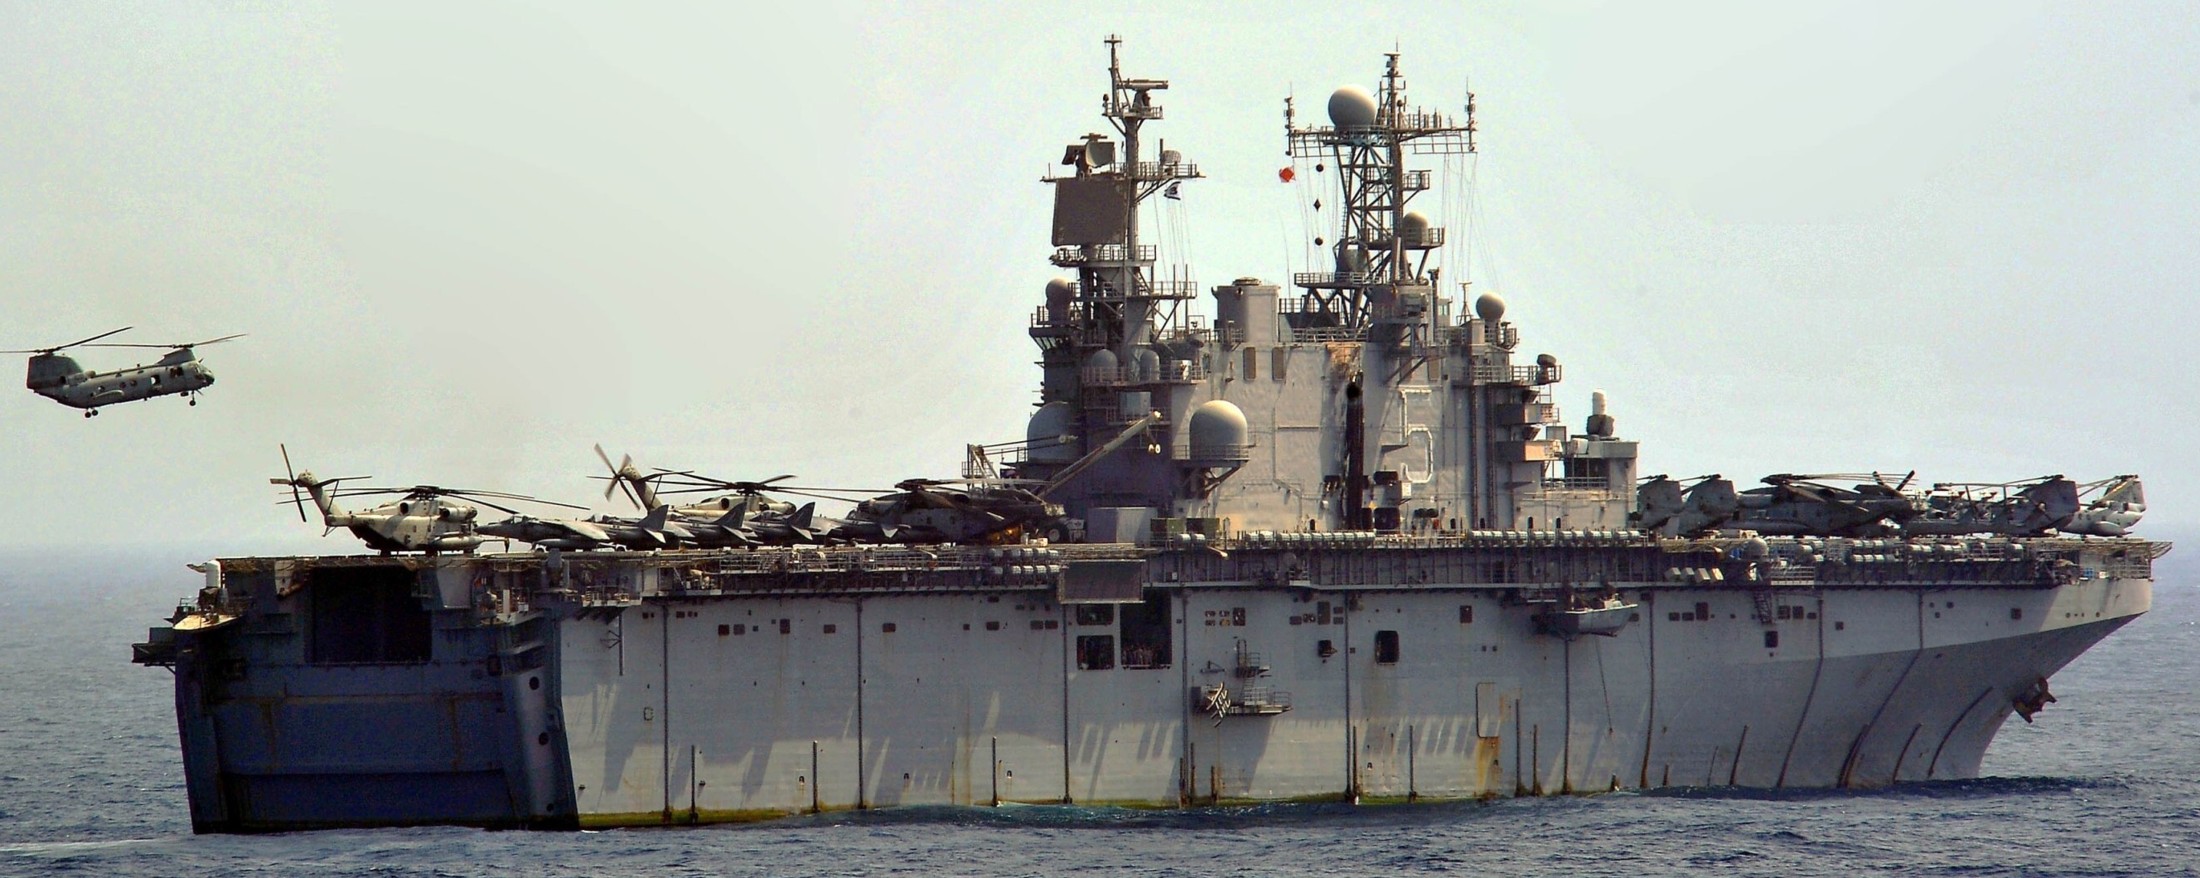 lha-5 uss peleliu tarawa class amphibious assault ship landing helicopter us navy hmm-364(rein) marines 5th fleet aor 86